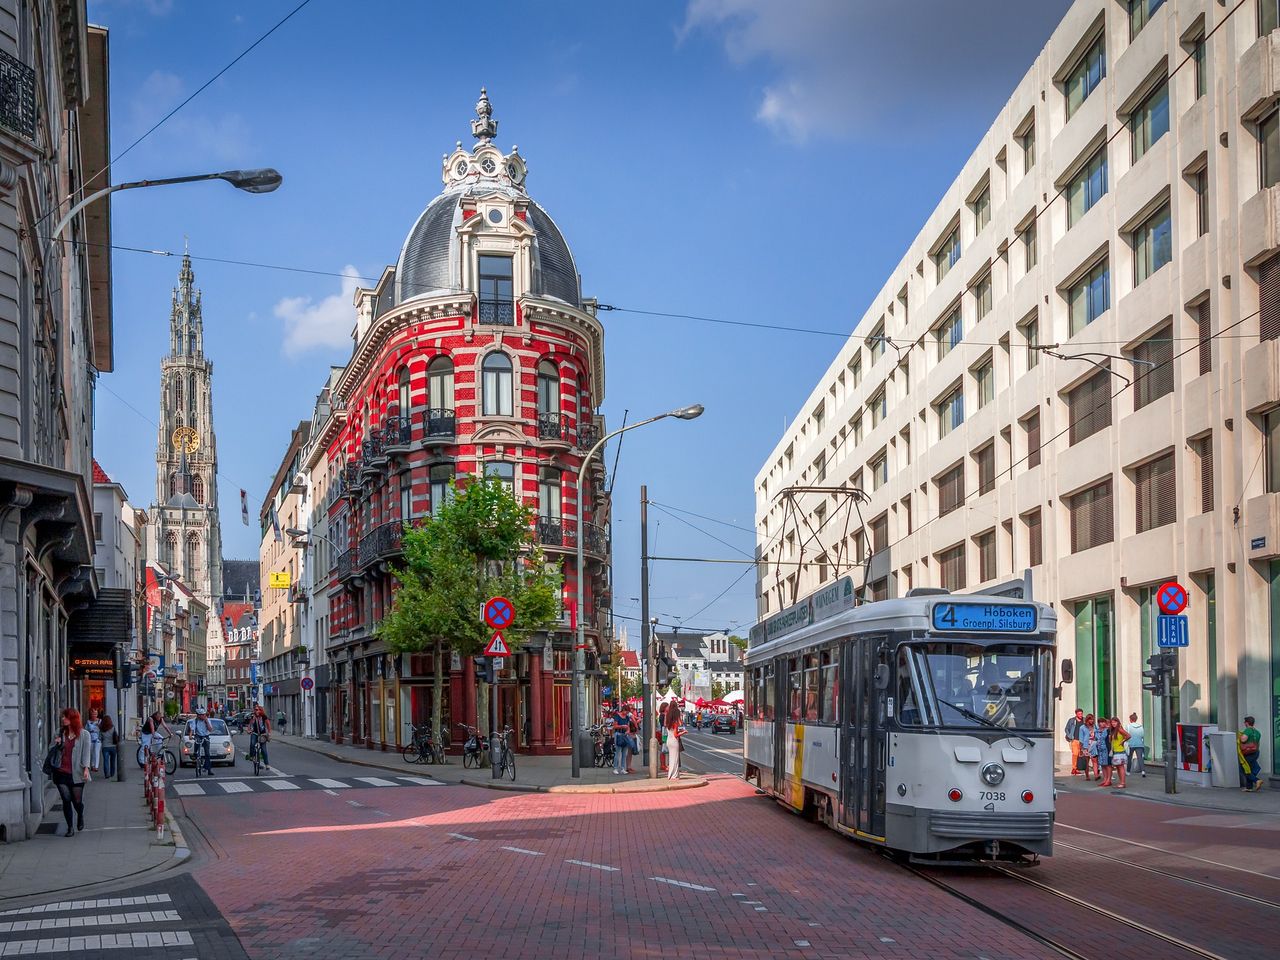 3 Tage die Hafenmetropole Antwerpen erkunden